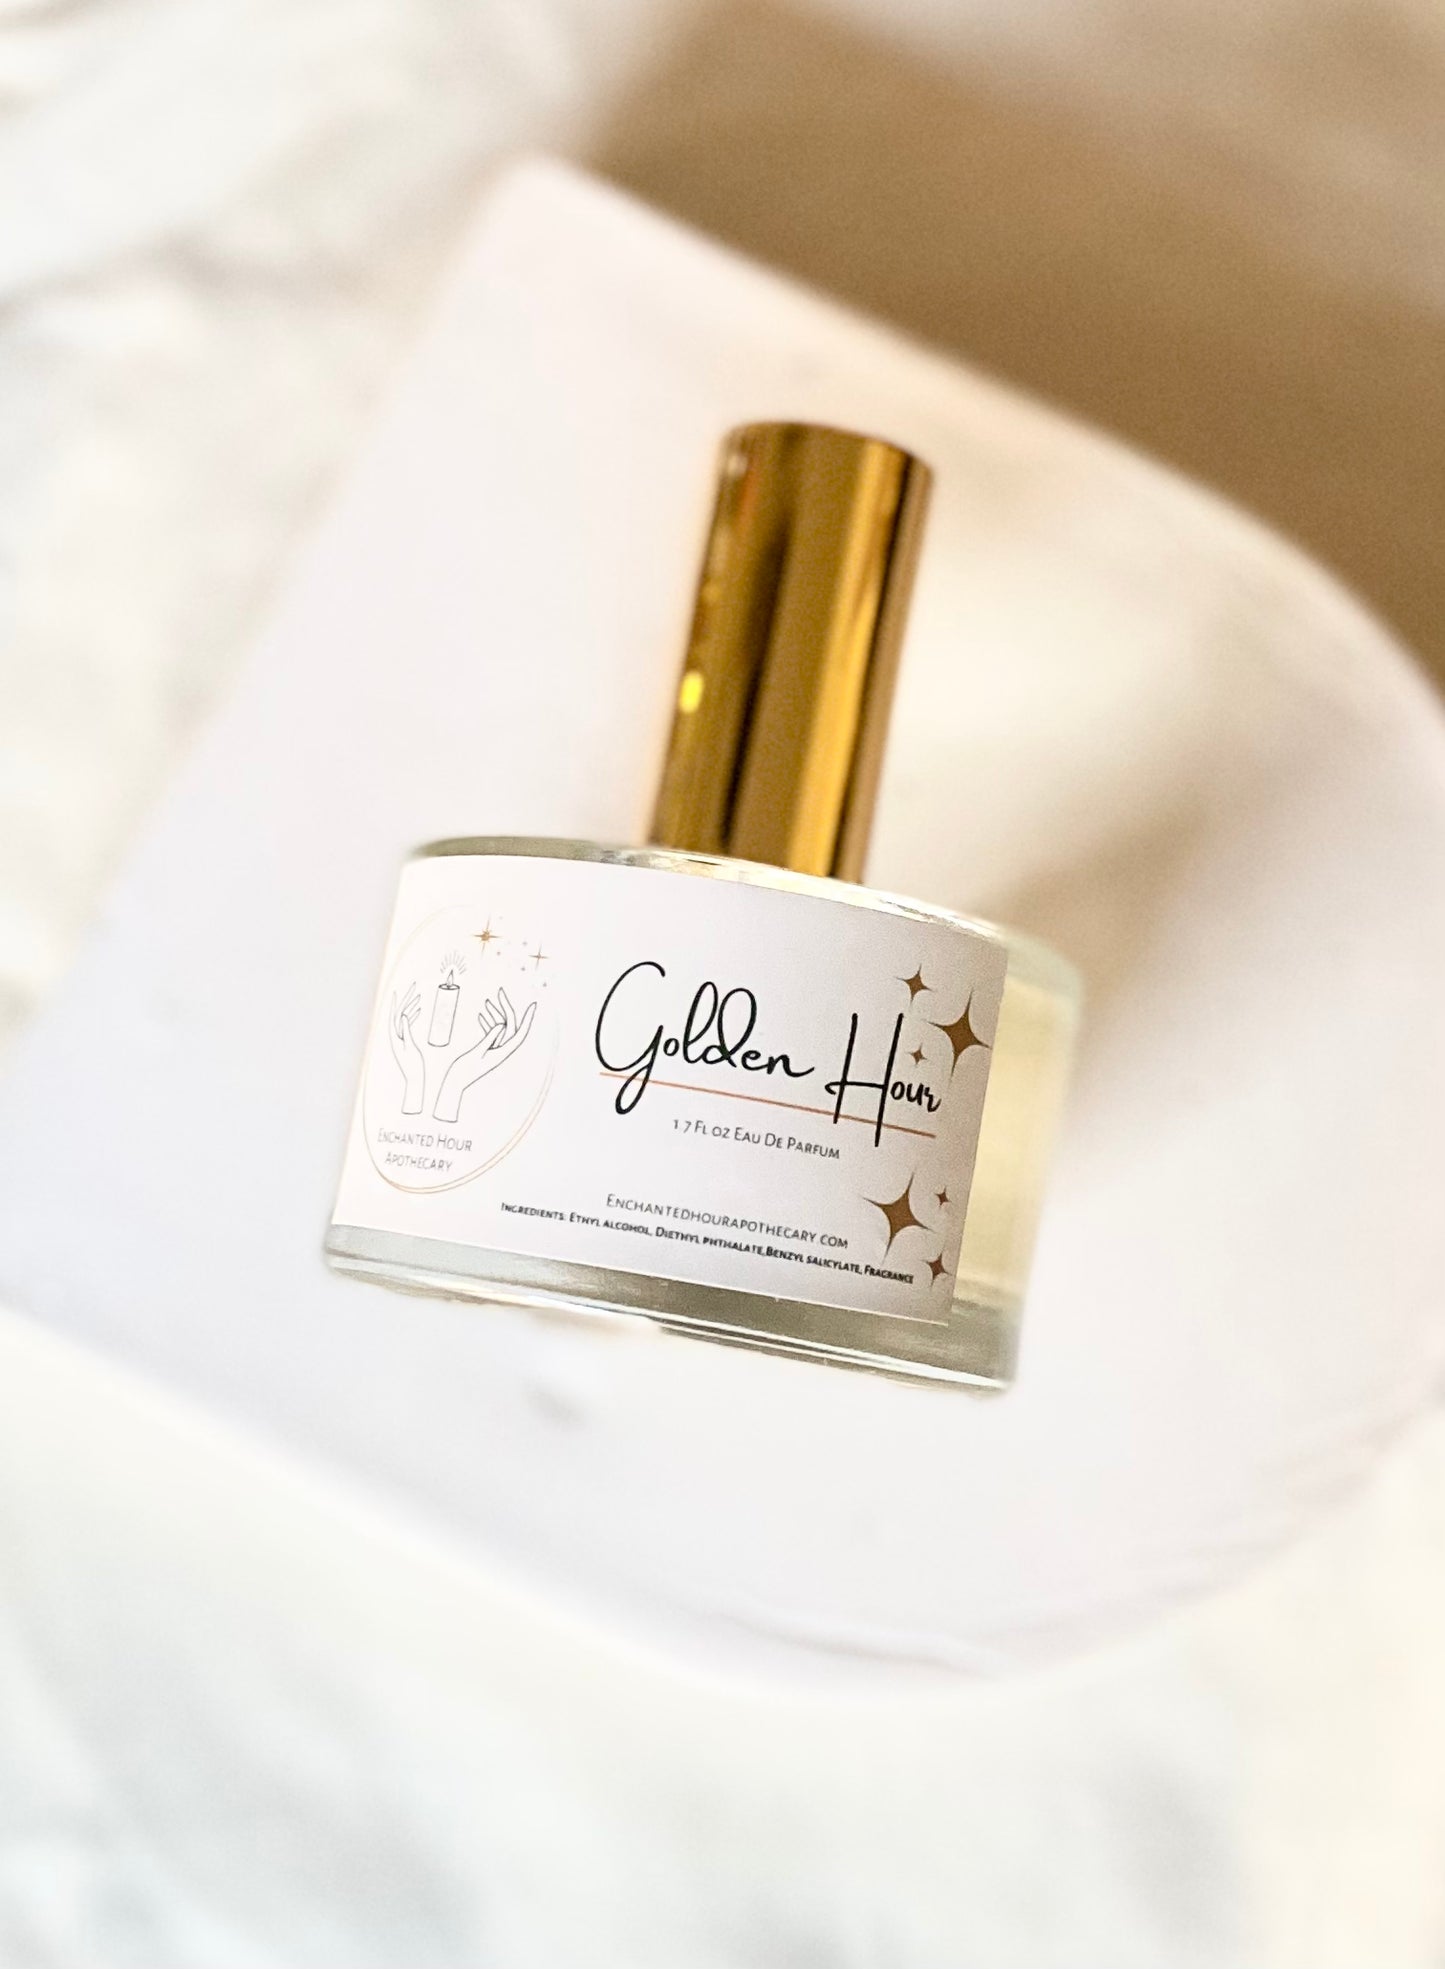 Golden Hour | Perfume | Eau de Perfume | Floral | Sensual | Romantic